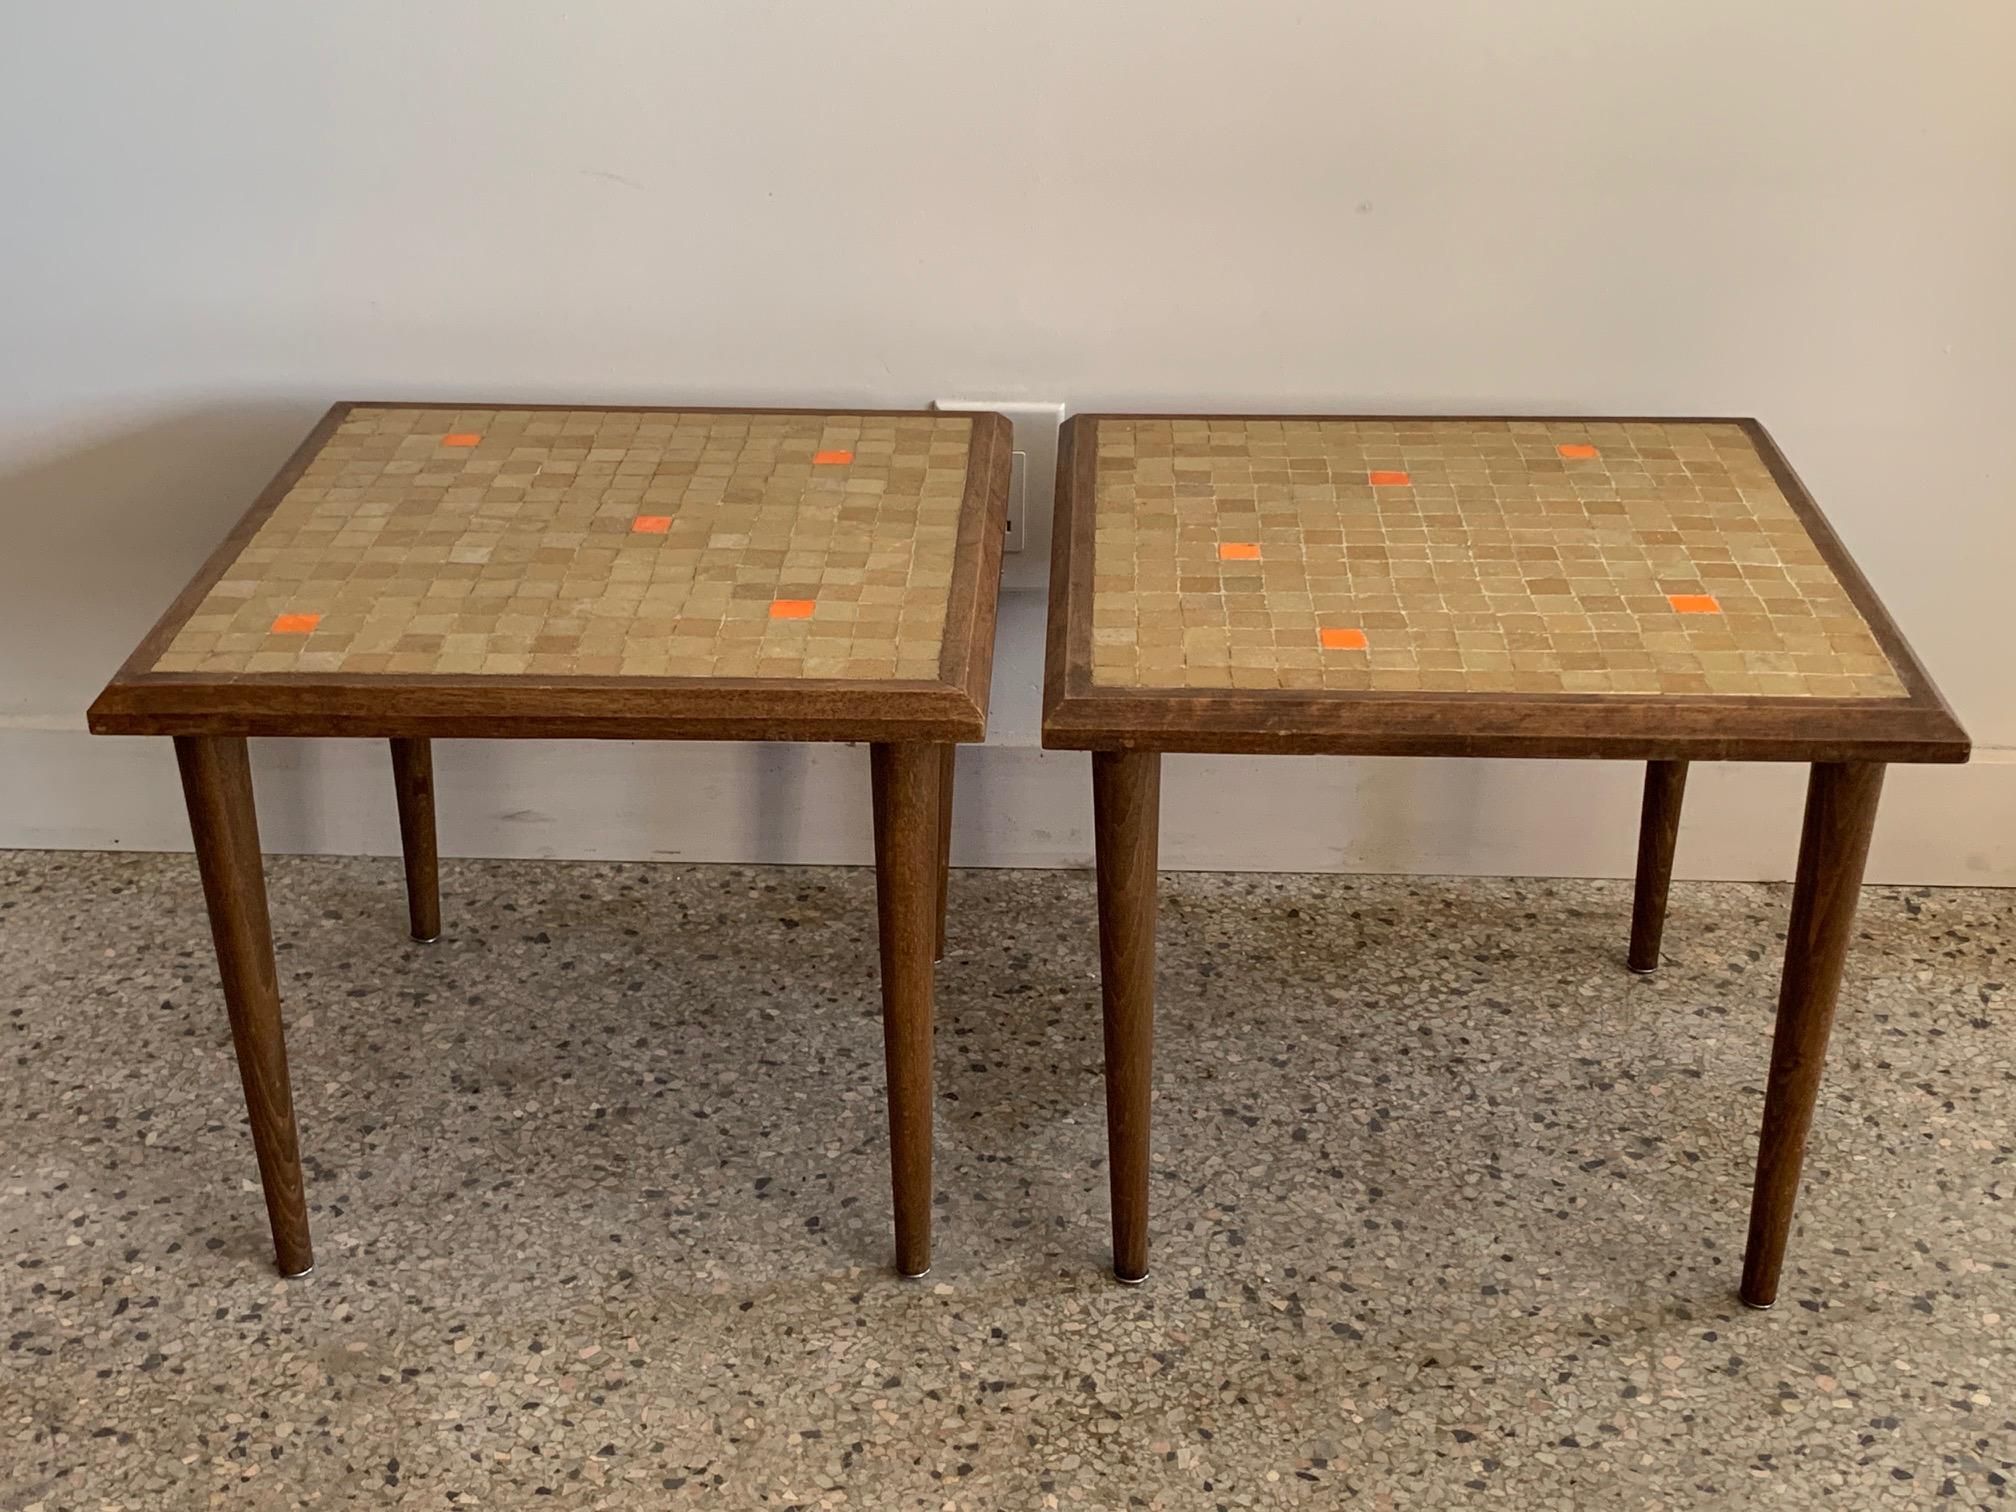 Ein Paar charmante Beistelltische mit Muranokacheln, die in einem zufälligen Muster angeordnet sind.